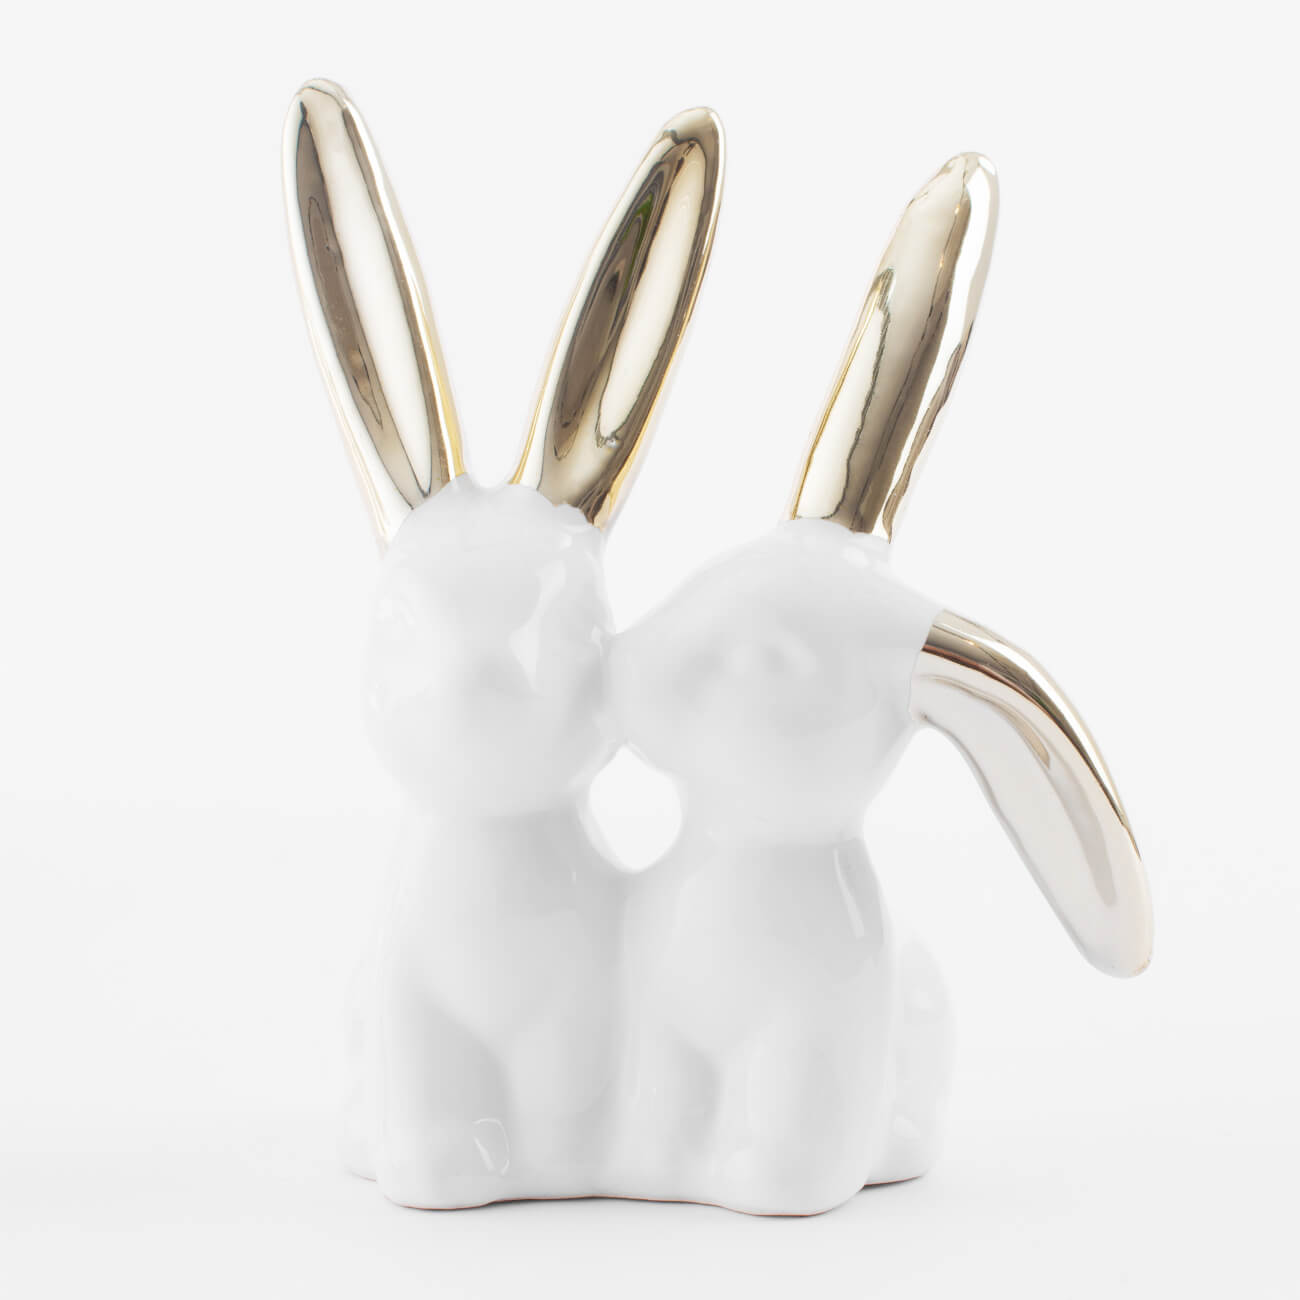 статуэтка 14 см керамика бело золотистая крольчиха и крольчонок easter gold Держатель для украшений, 11 см, керамика, бело-золотистый, Кролики, Easter gold